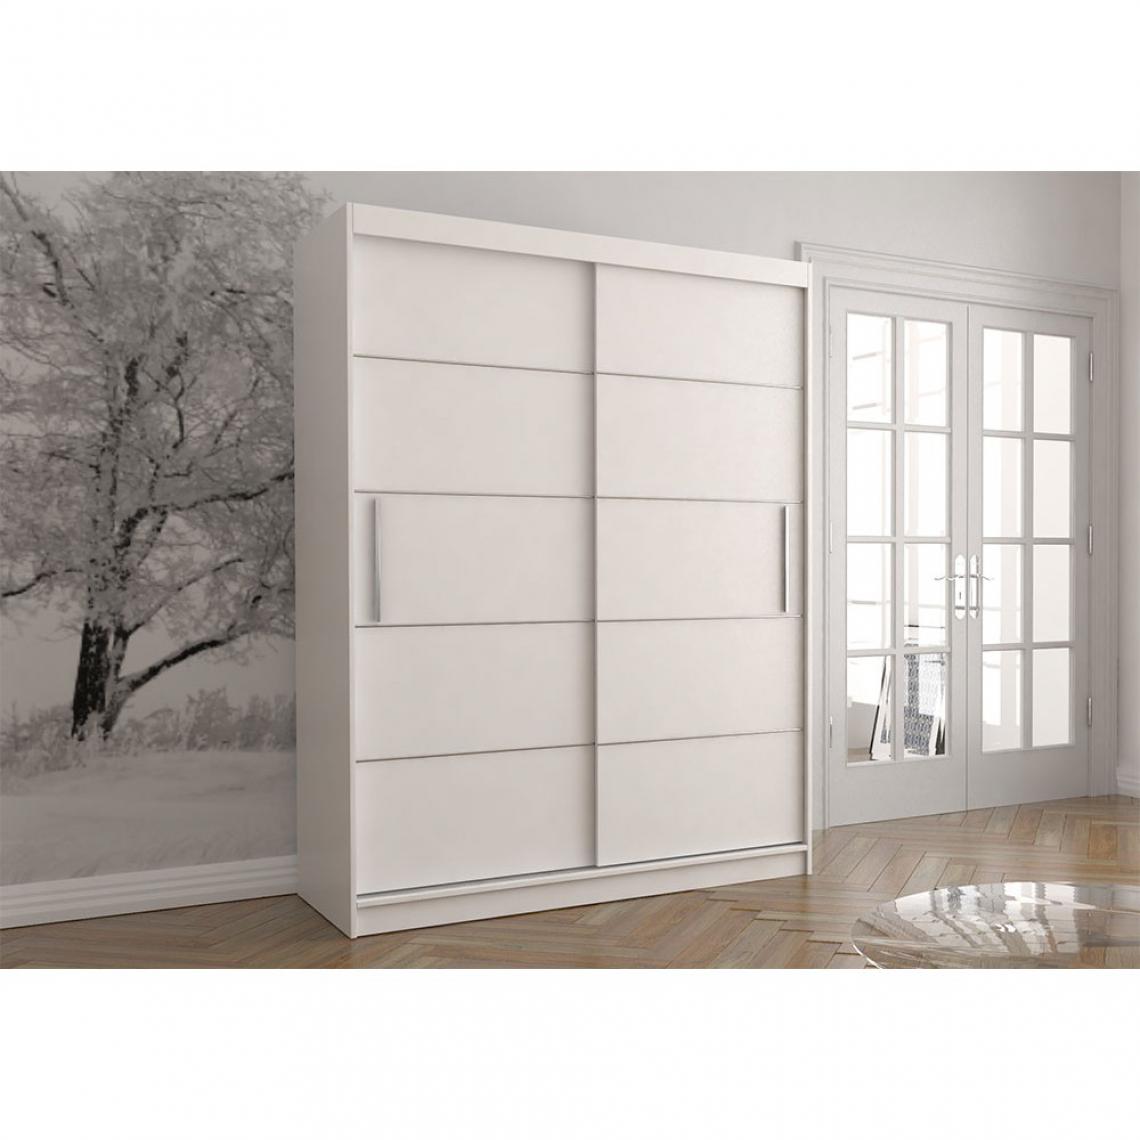 Hucoco - VIELL - Grande armoire à portes coulissantes - 5 étagères + tringle - 218x183x61 cm - Blanc - Armoire